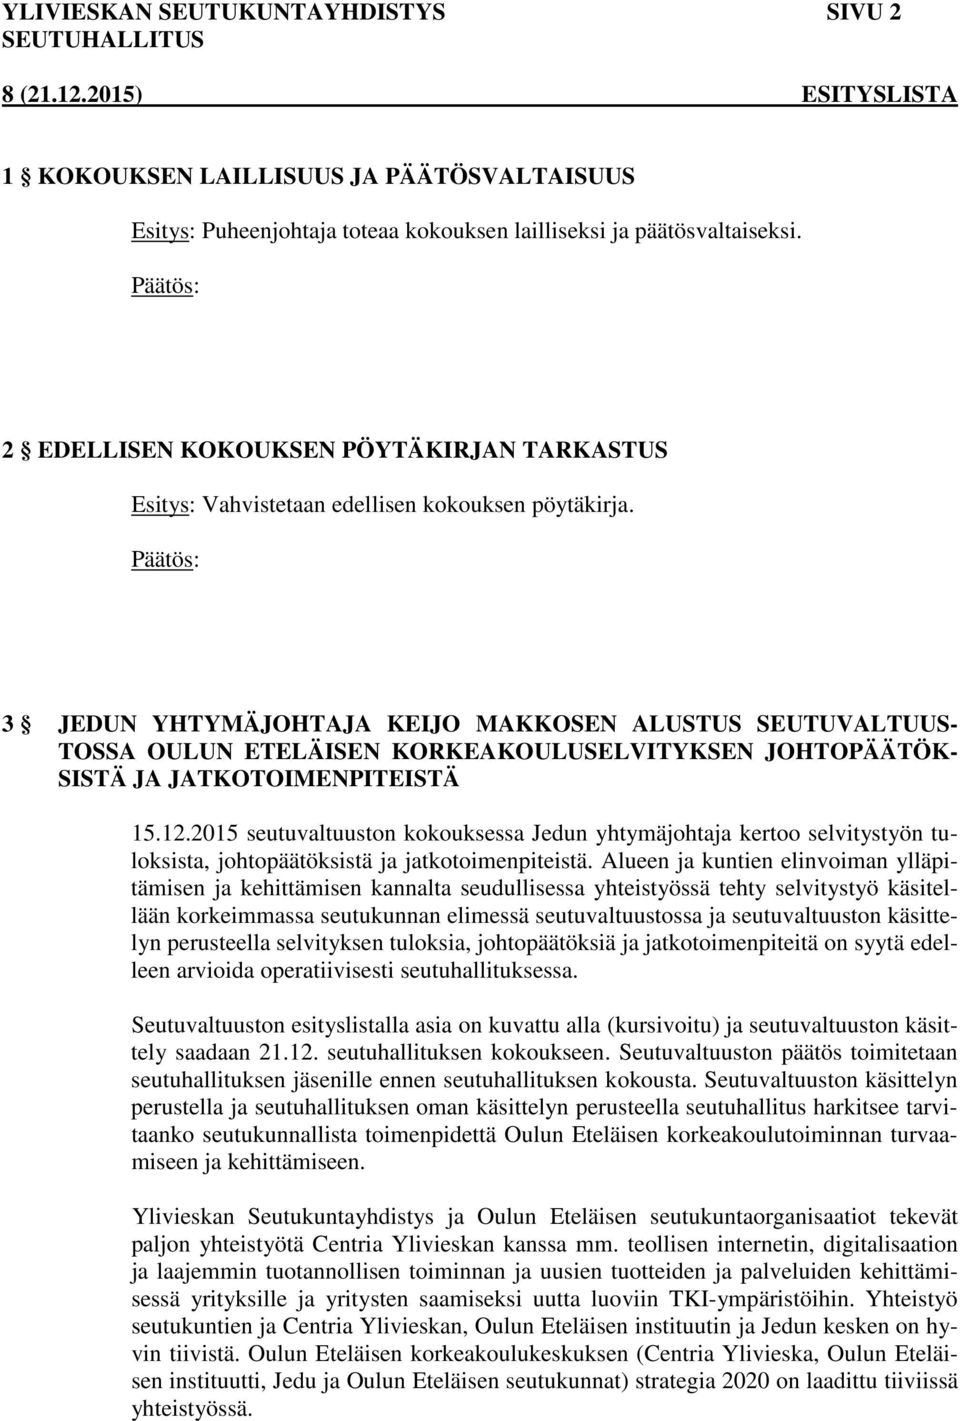 3 JEDUN YHTYMÄJOHTAJA KEIJO MAKKOSEN ALUSTUS SEUTUVALTUUS- TOSSA OULUN ETELÄISEN KORKEAKOULUSELVITYKSEN JOHTOPÄÄTÖK- SISTÄ JA JATKOTOIMENPITEISTÄ 15.12.